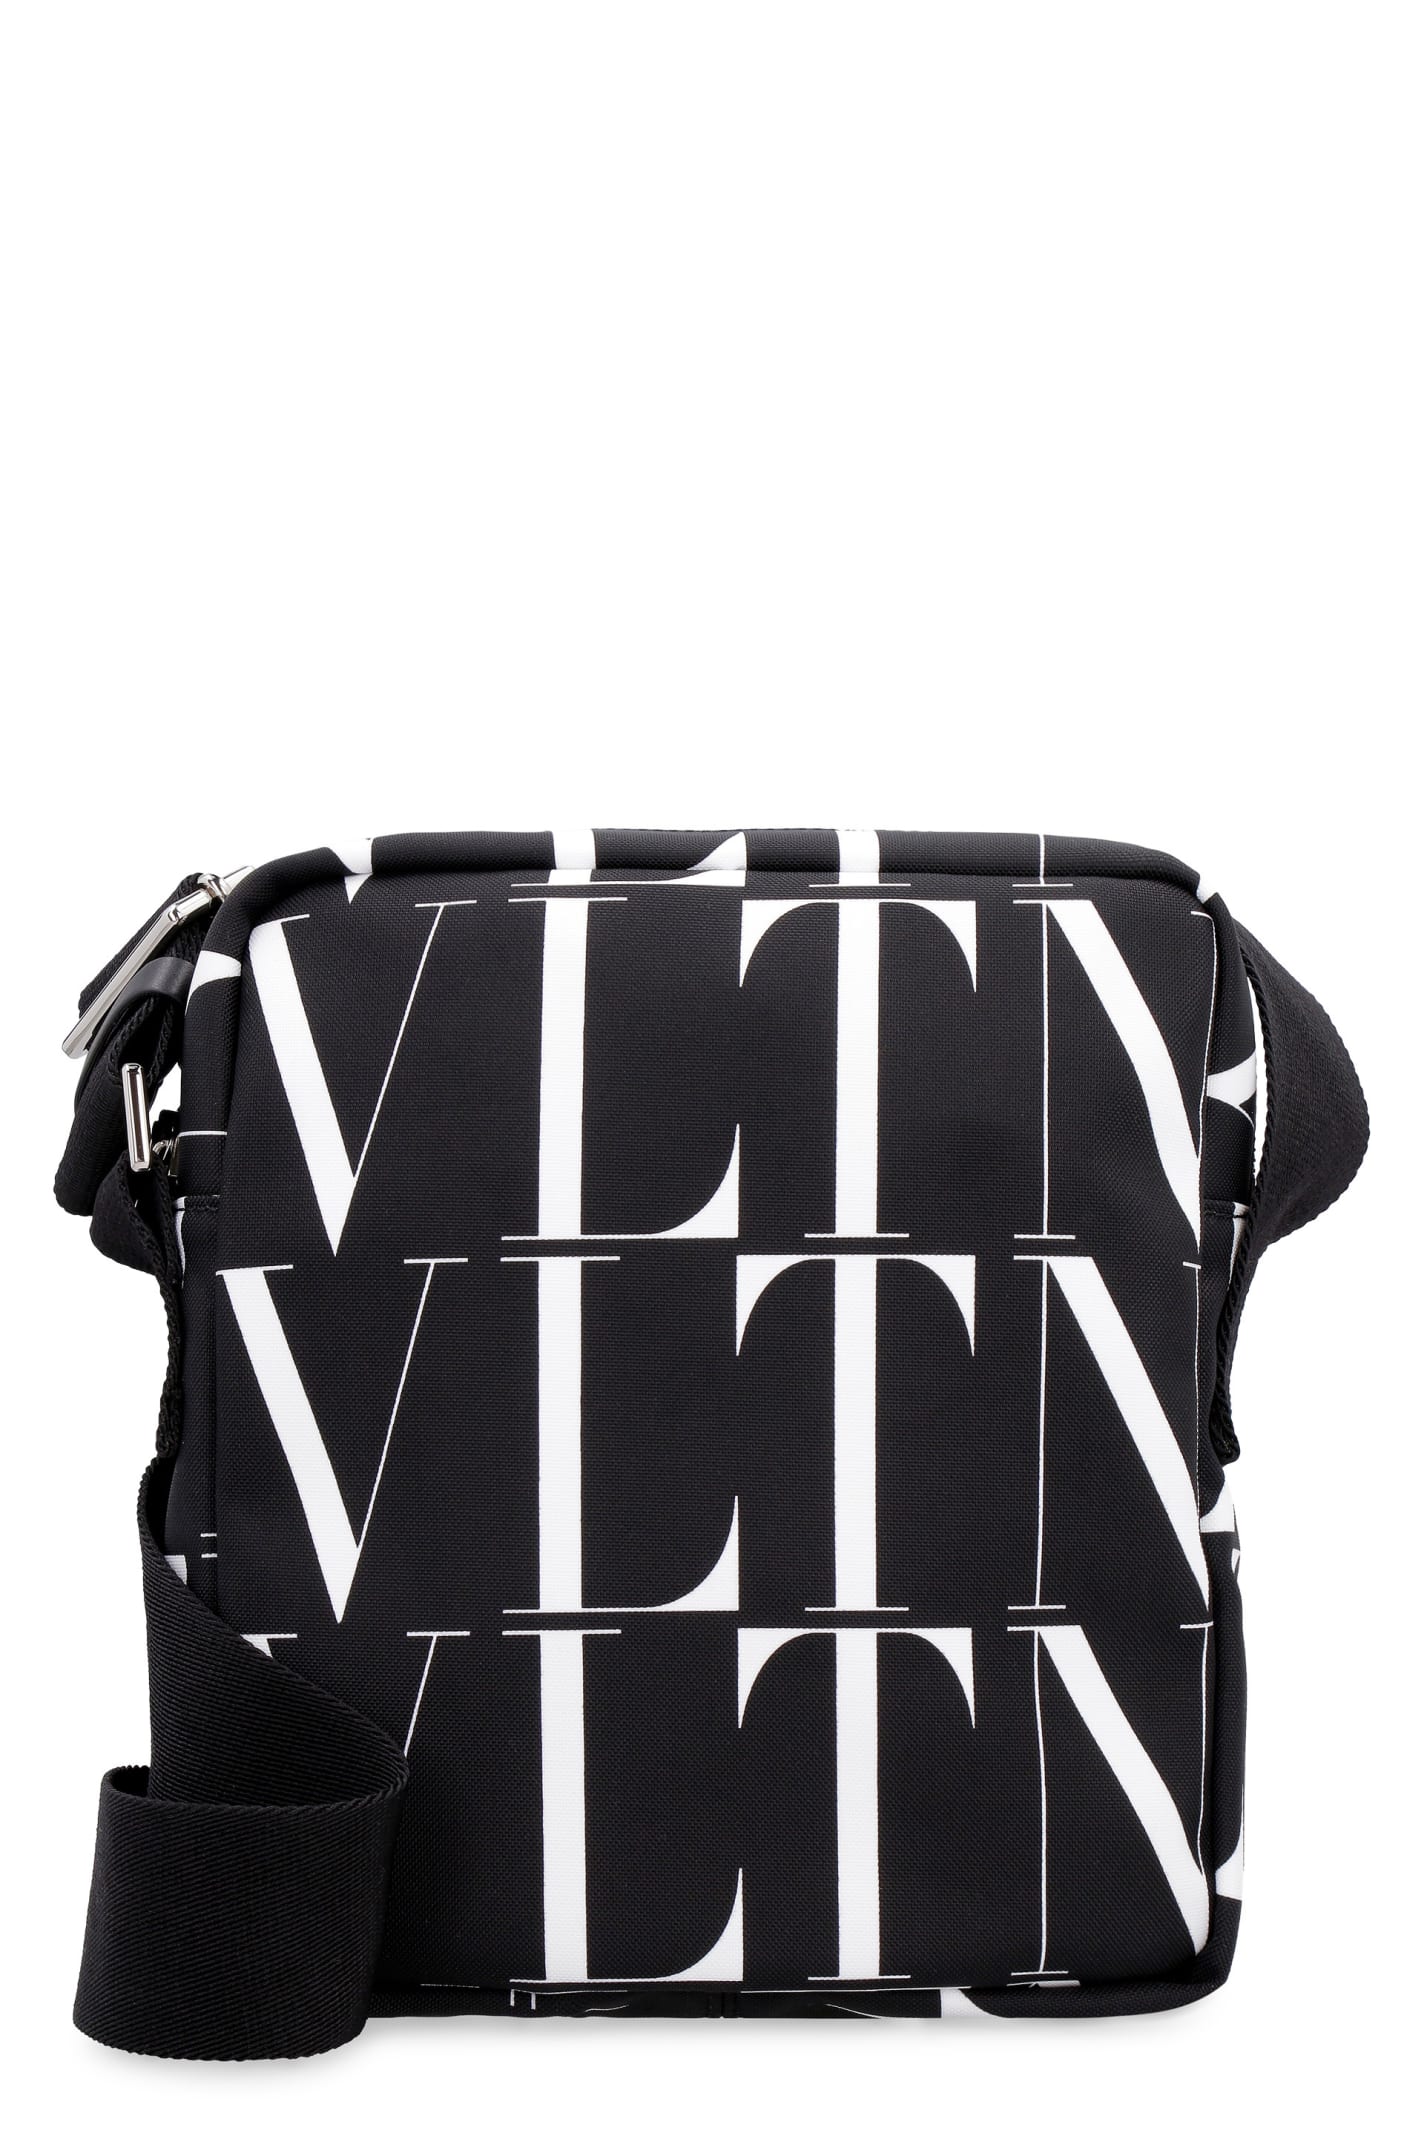 Valentino Nylon Messenger Bag - Valentino Garavani